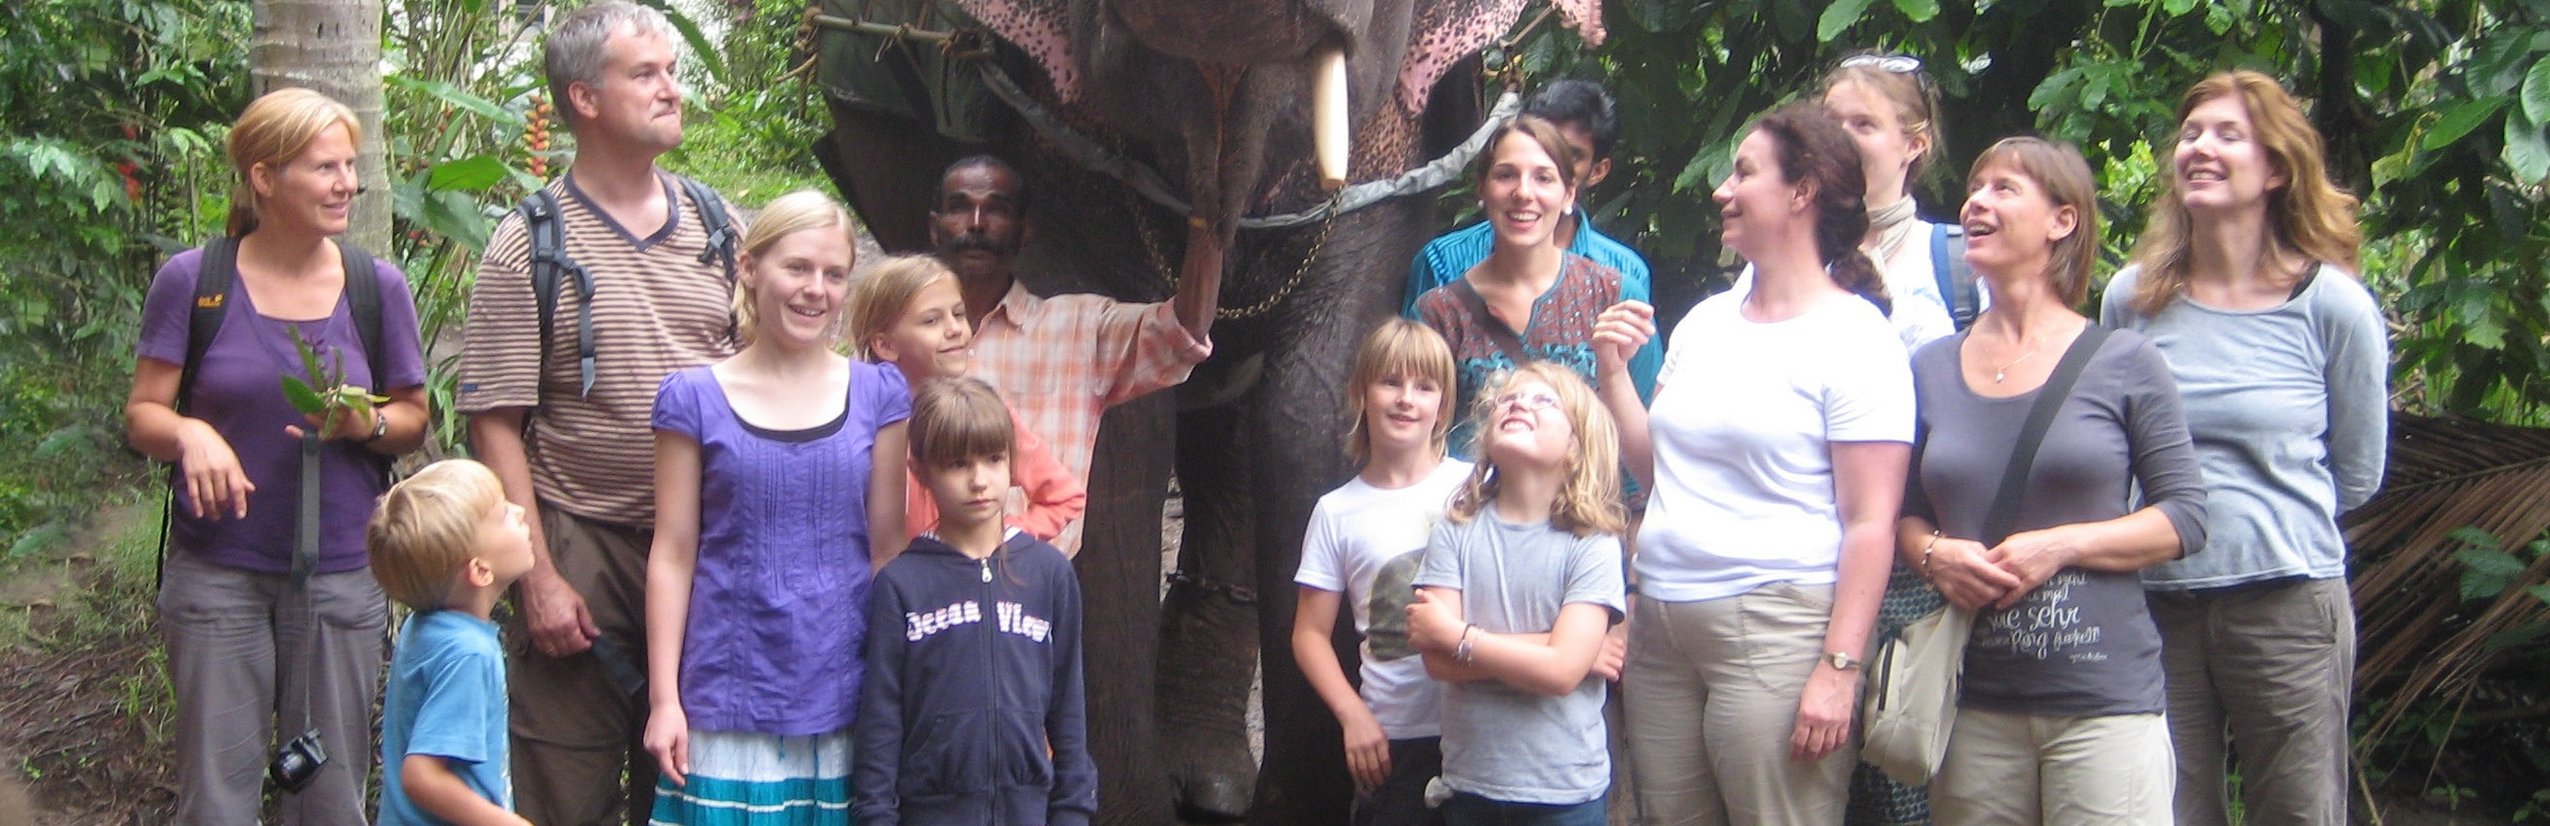 Indien Familienreise - Neues elektronisches Visum bei Indien Reisen mit Kindern - Reisegruppe neben Elefant